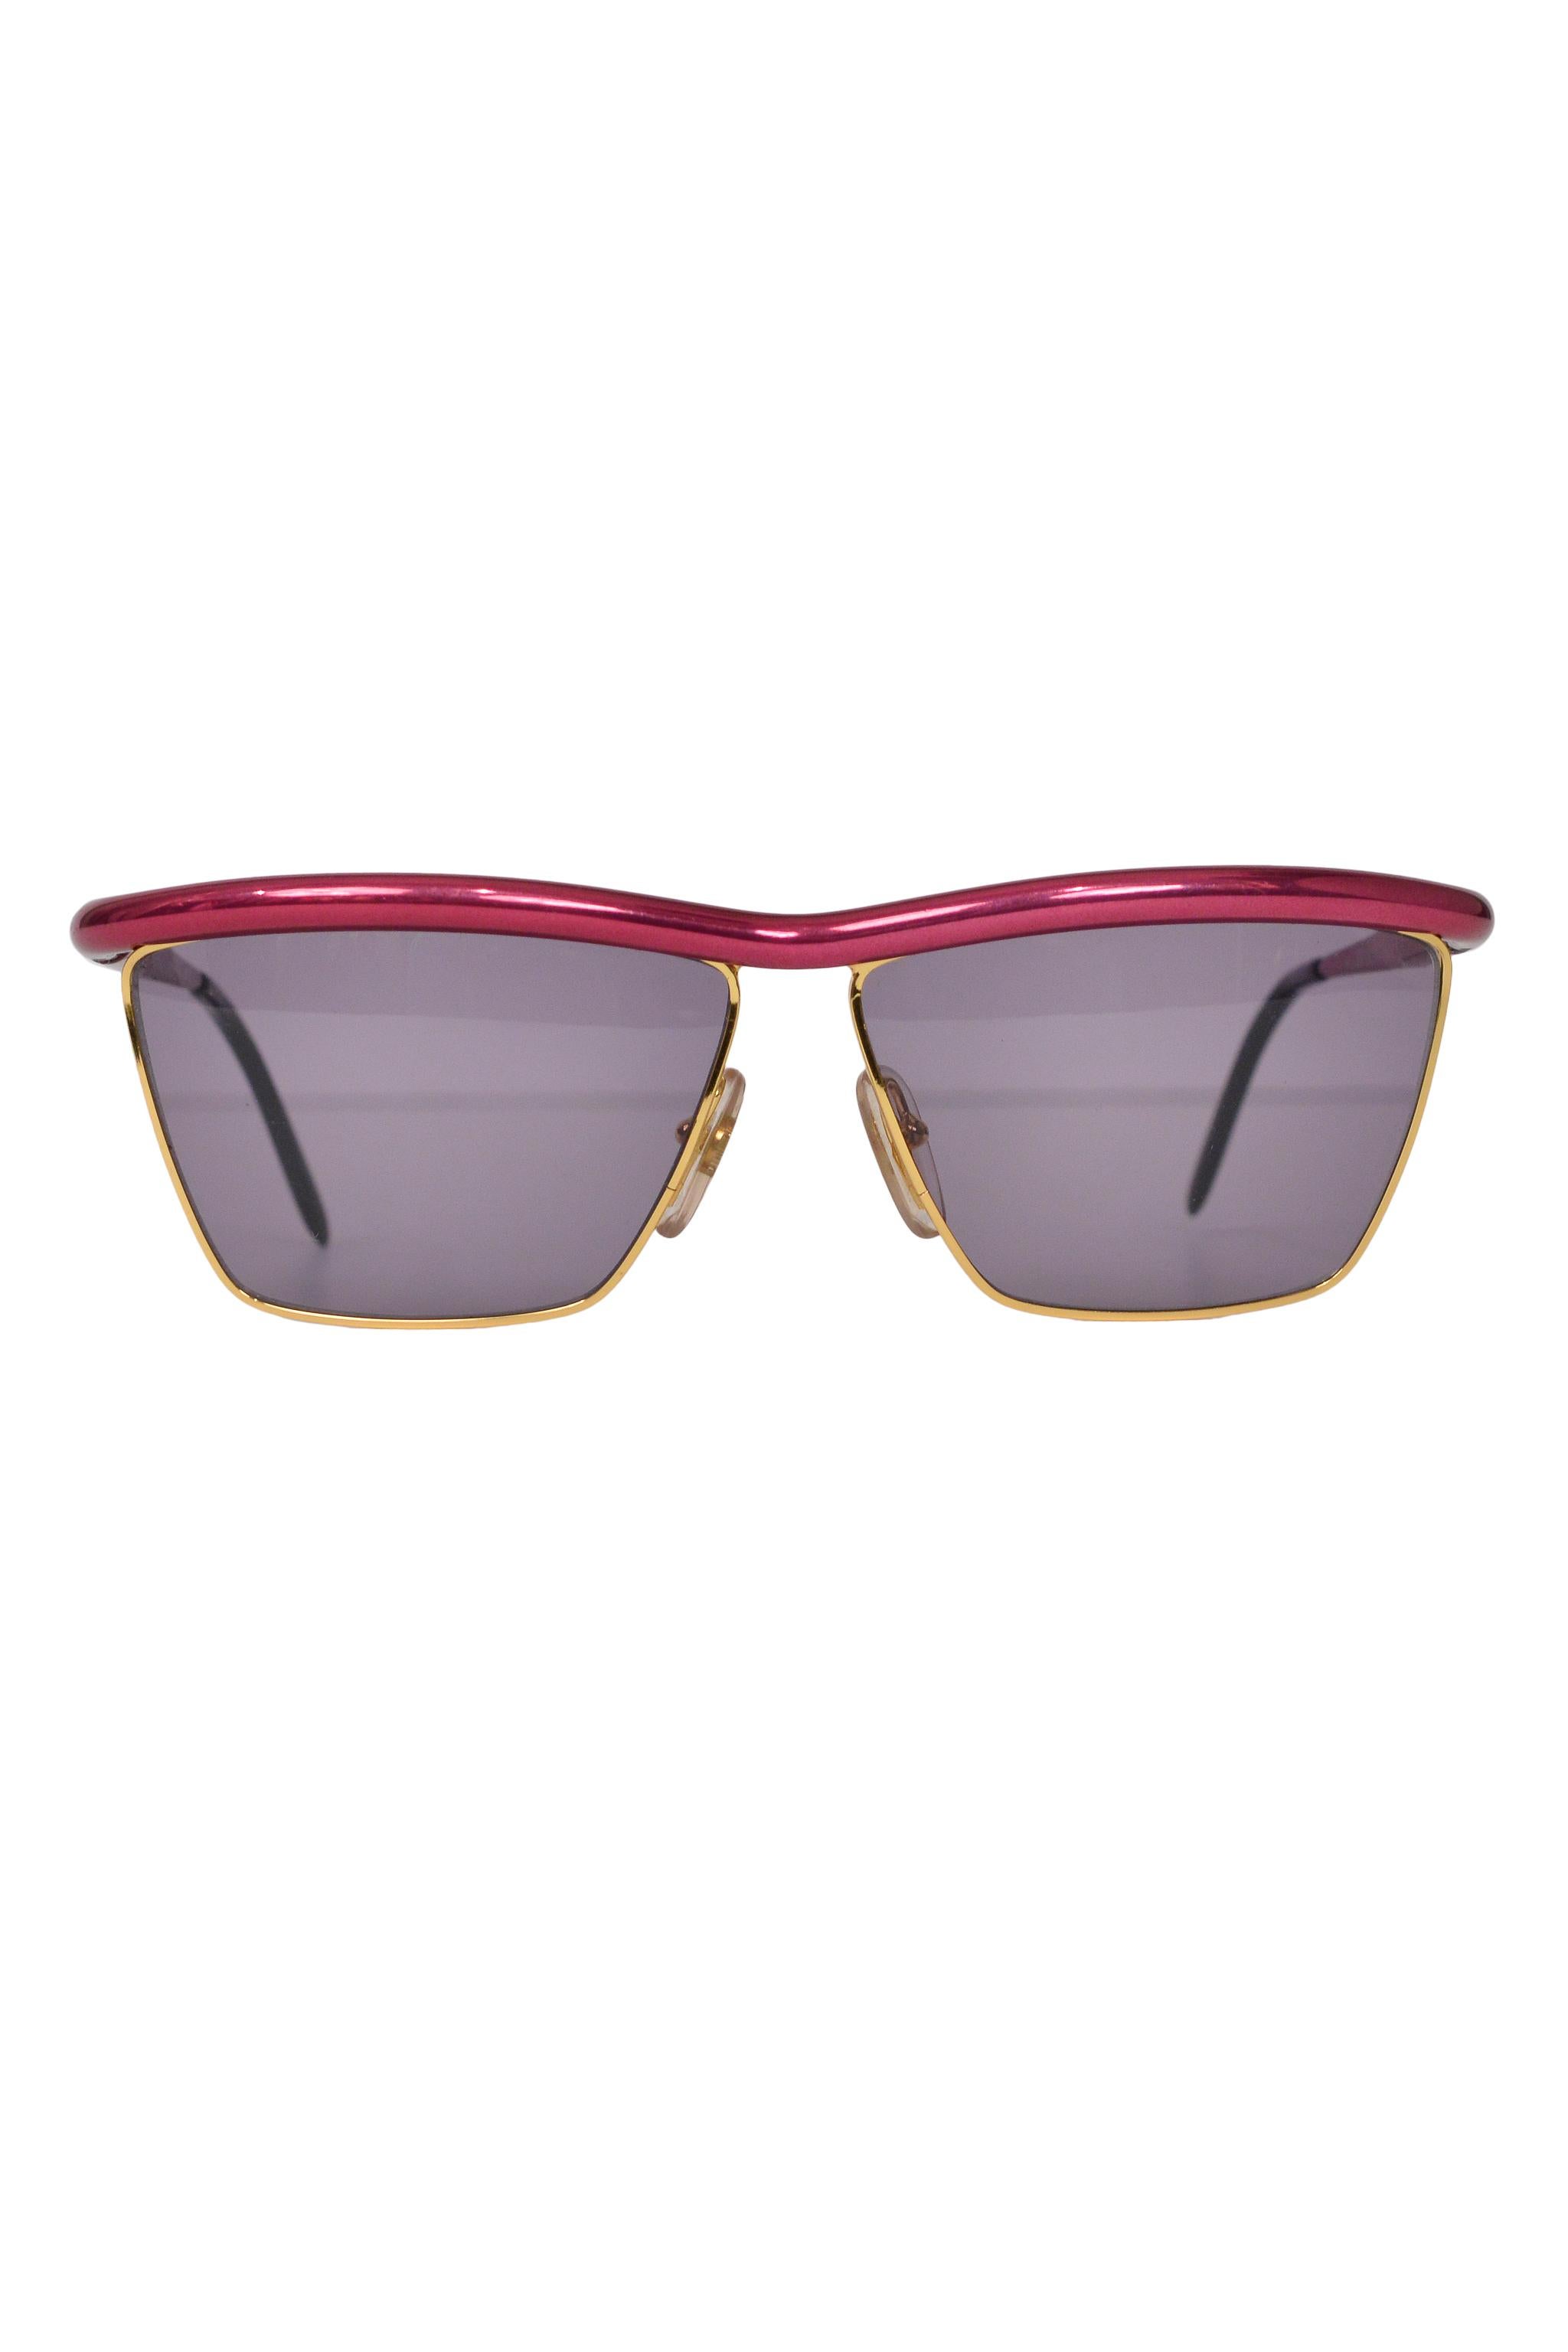 Gianfranco Ferre - Lunettes de soleil roses métalliques vintage avec lunettes fumées  Pour femmes en vente